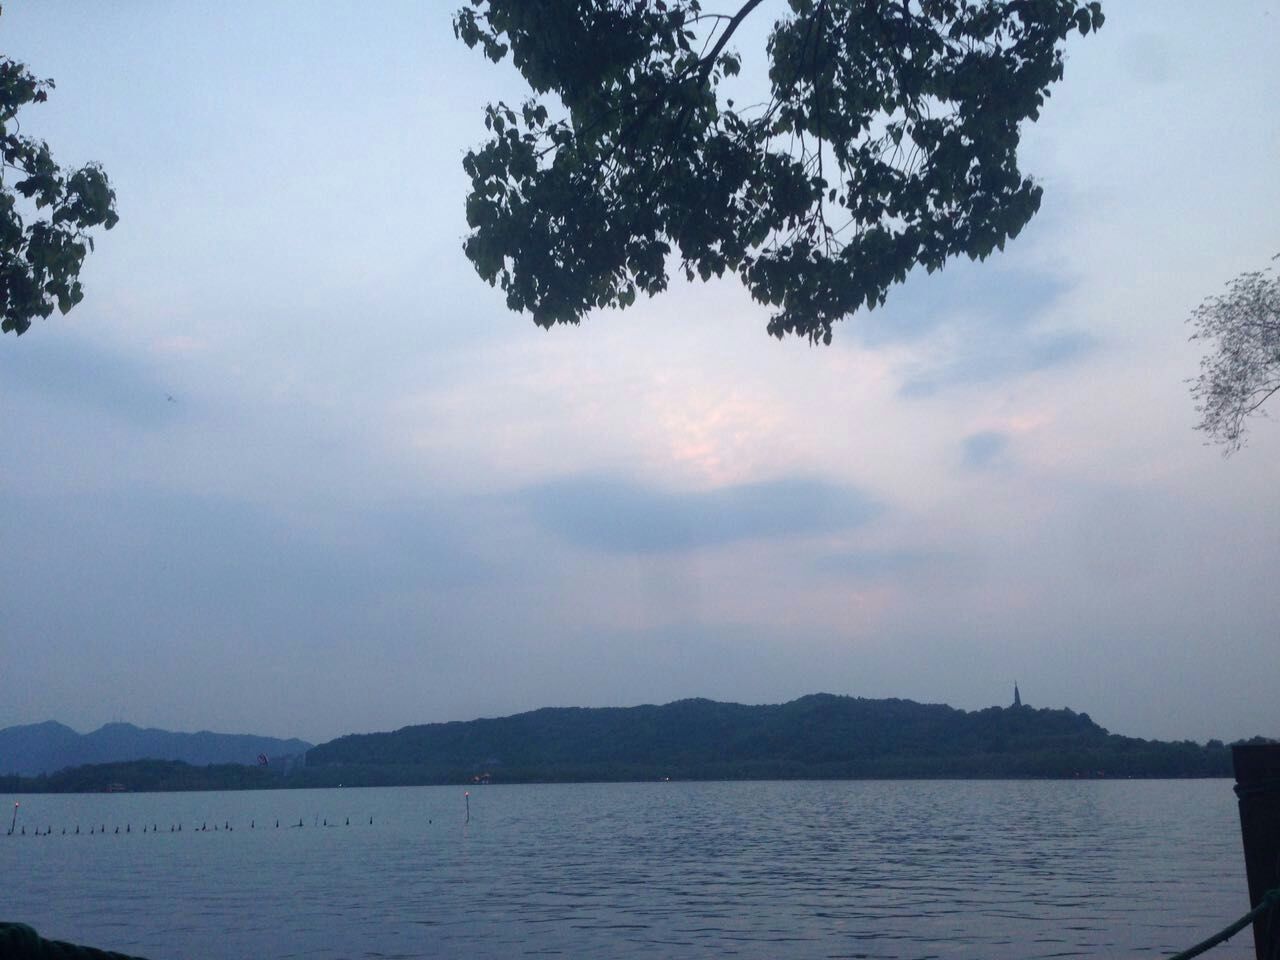 很大，很美，坐着小船在西湖上游荡，远离了人声鼎沸的湖边，感觉真的静了下